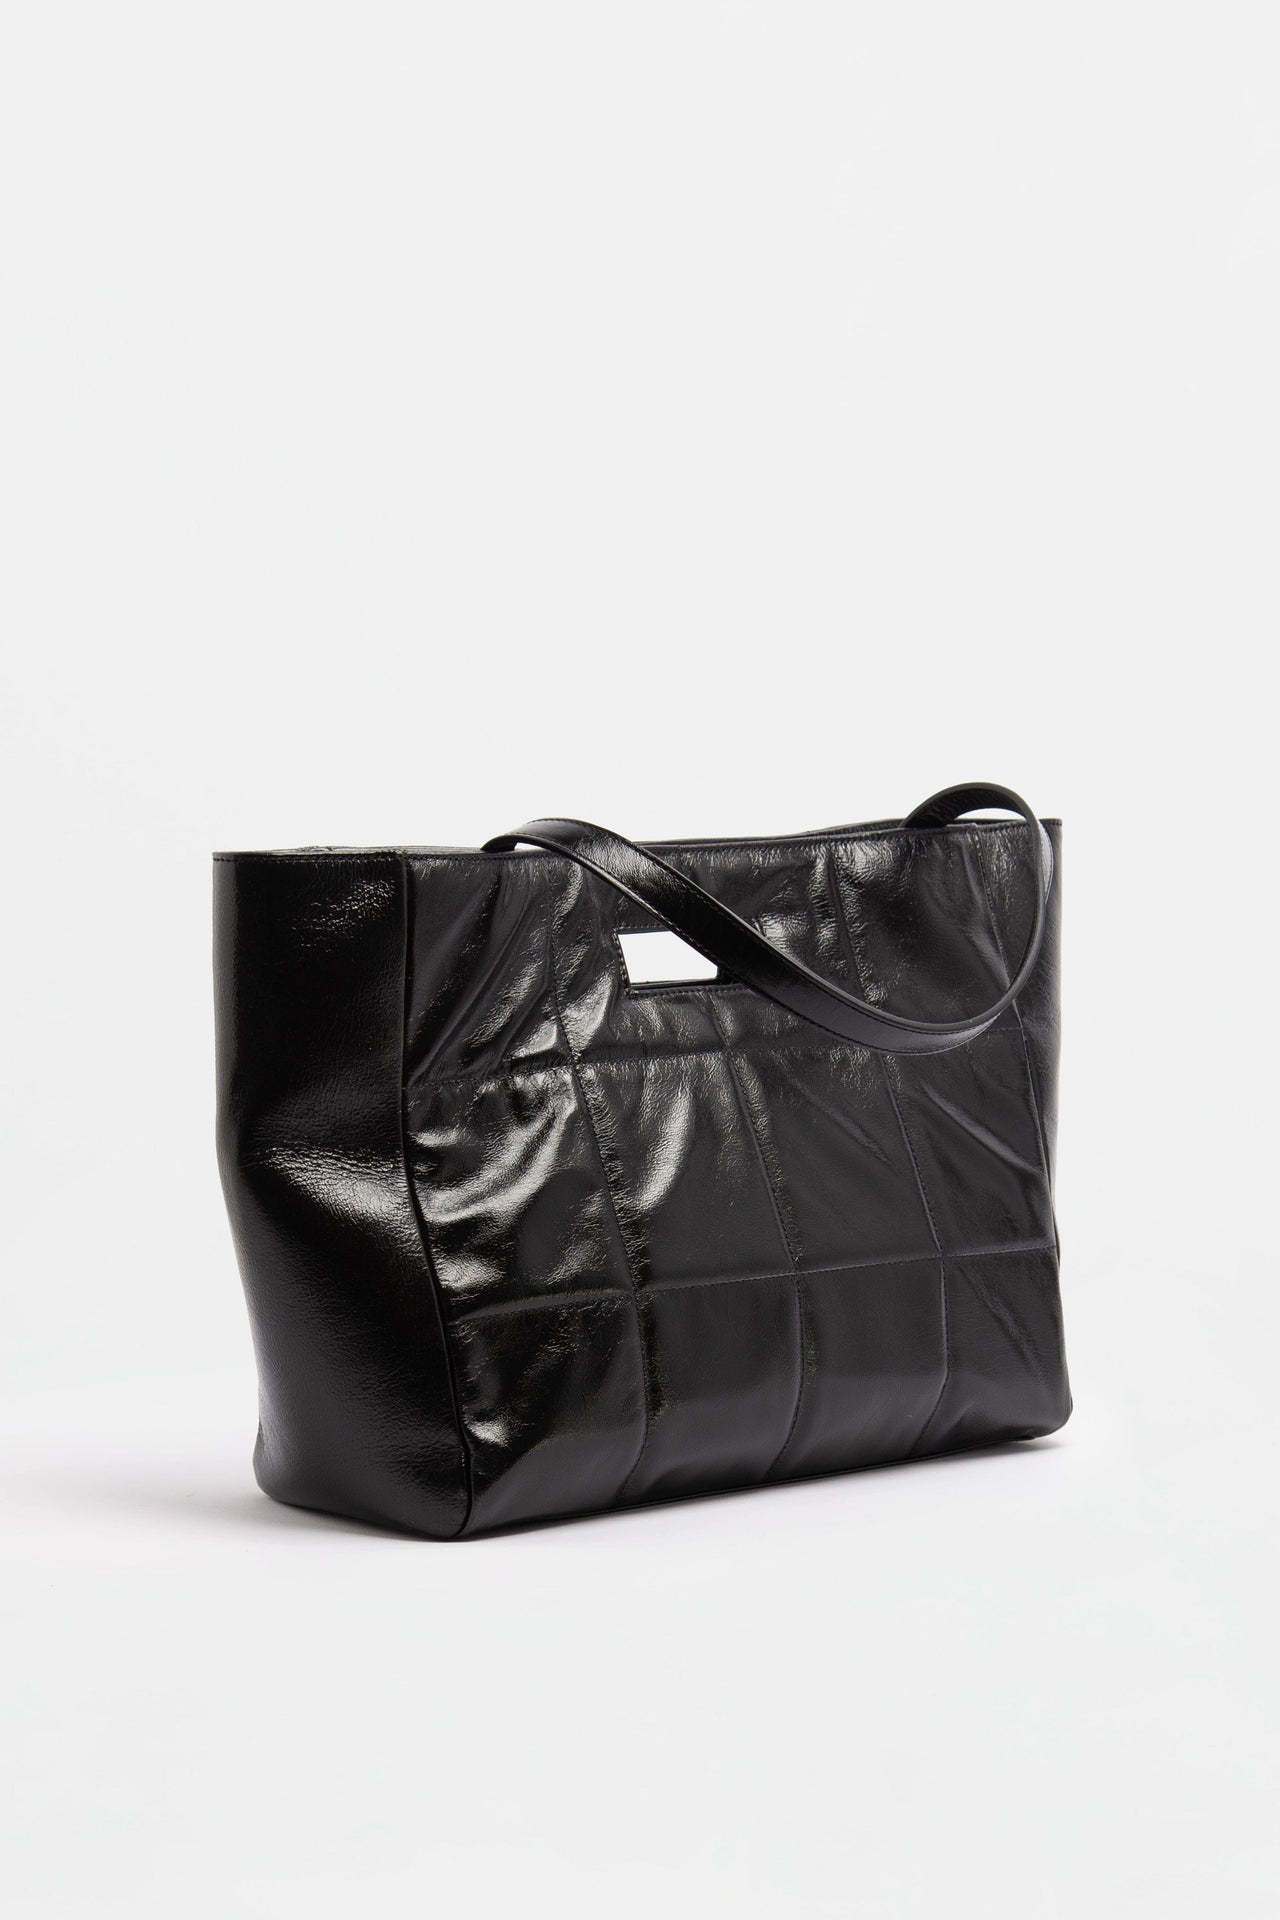 The QUILTED BAG SOFT Vintage Black - JULIA SKERGETH